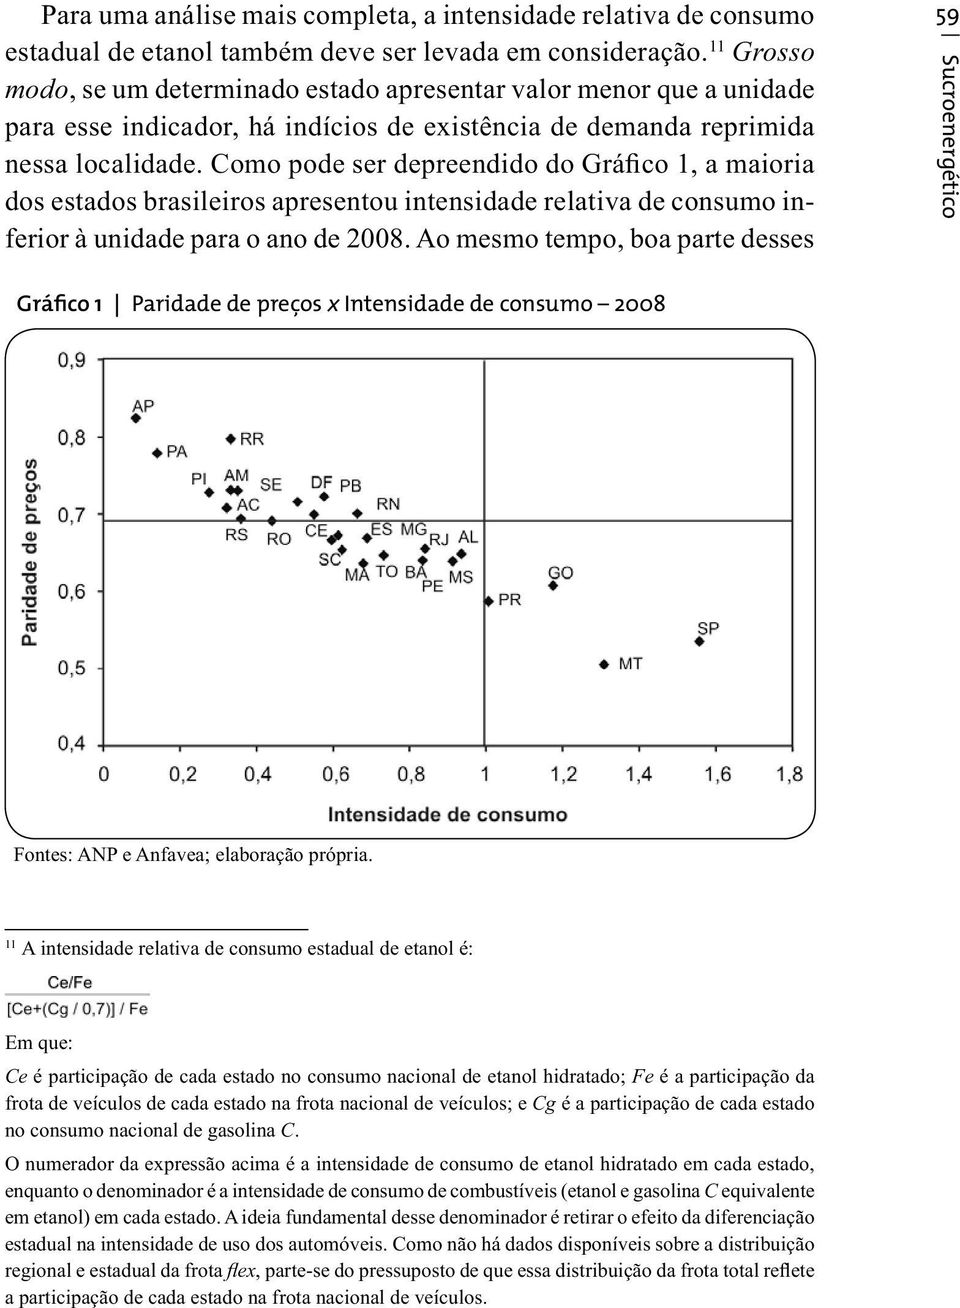 Como pode ser depreendido do Gráfico 1, a maioria dos estados brasileiros apresentou intensidade relativa de consumo inferior à unidade para o ano de 2008.